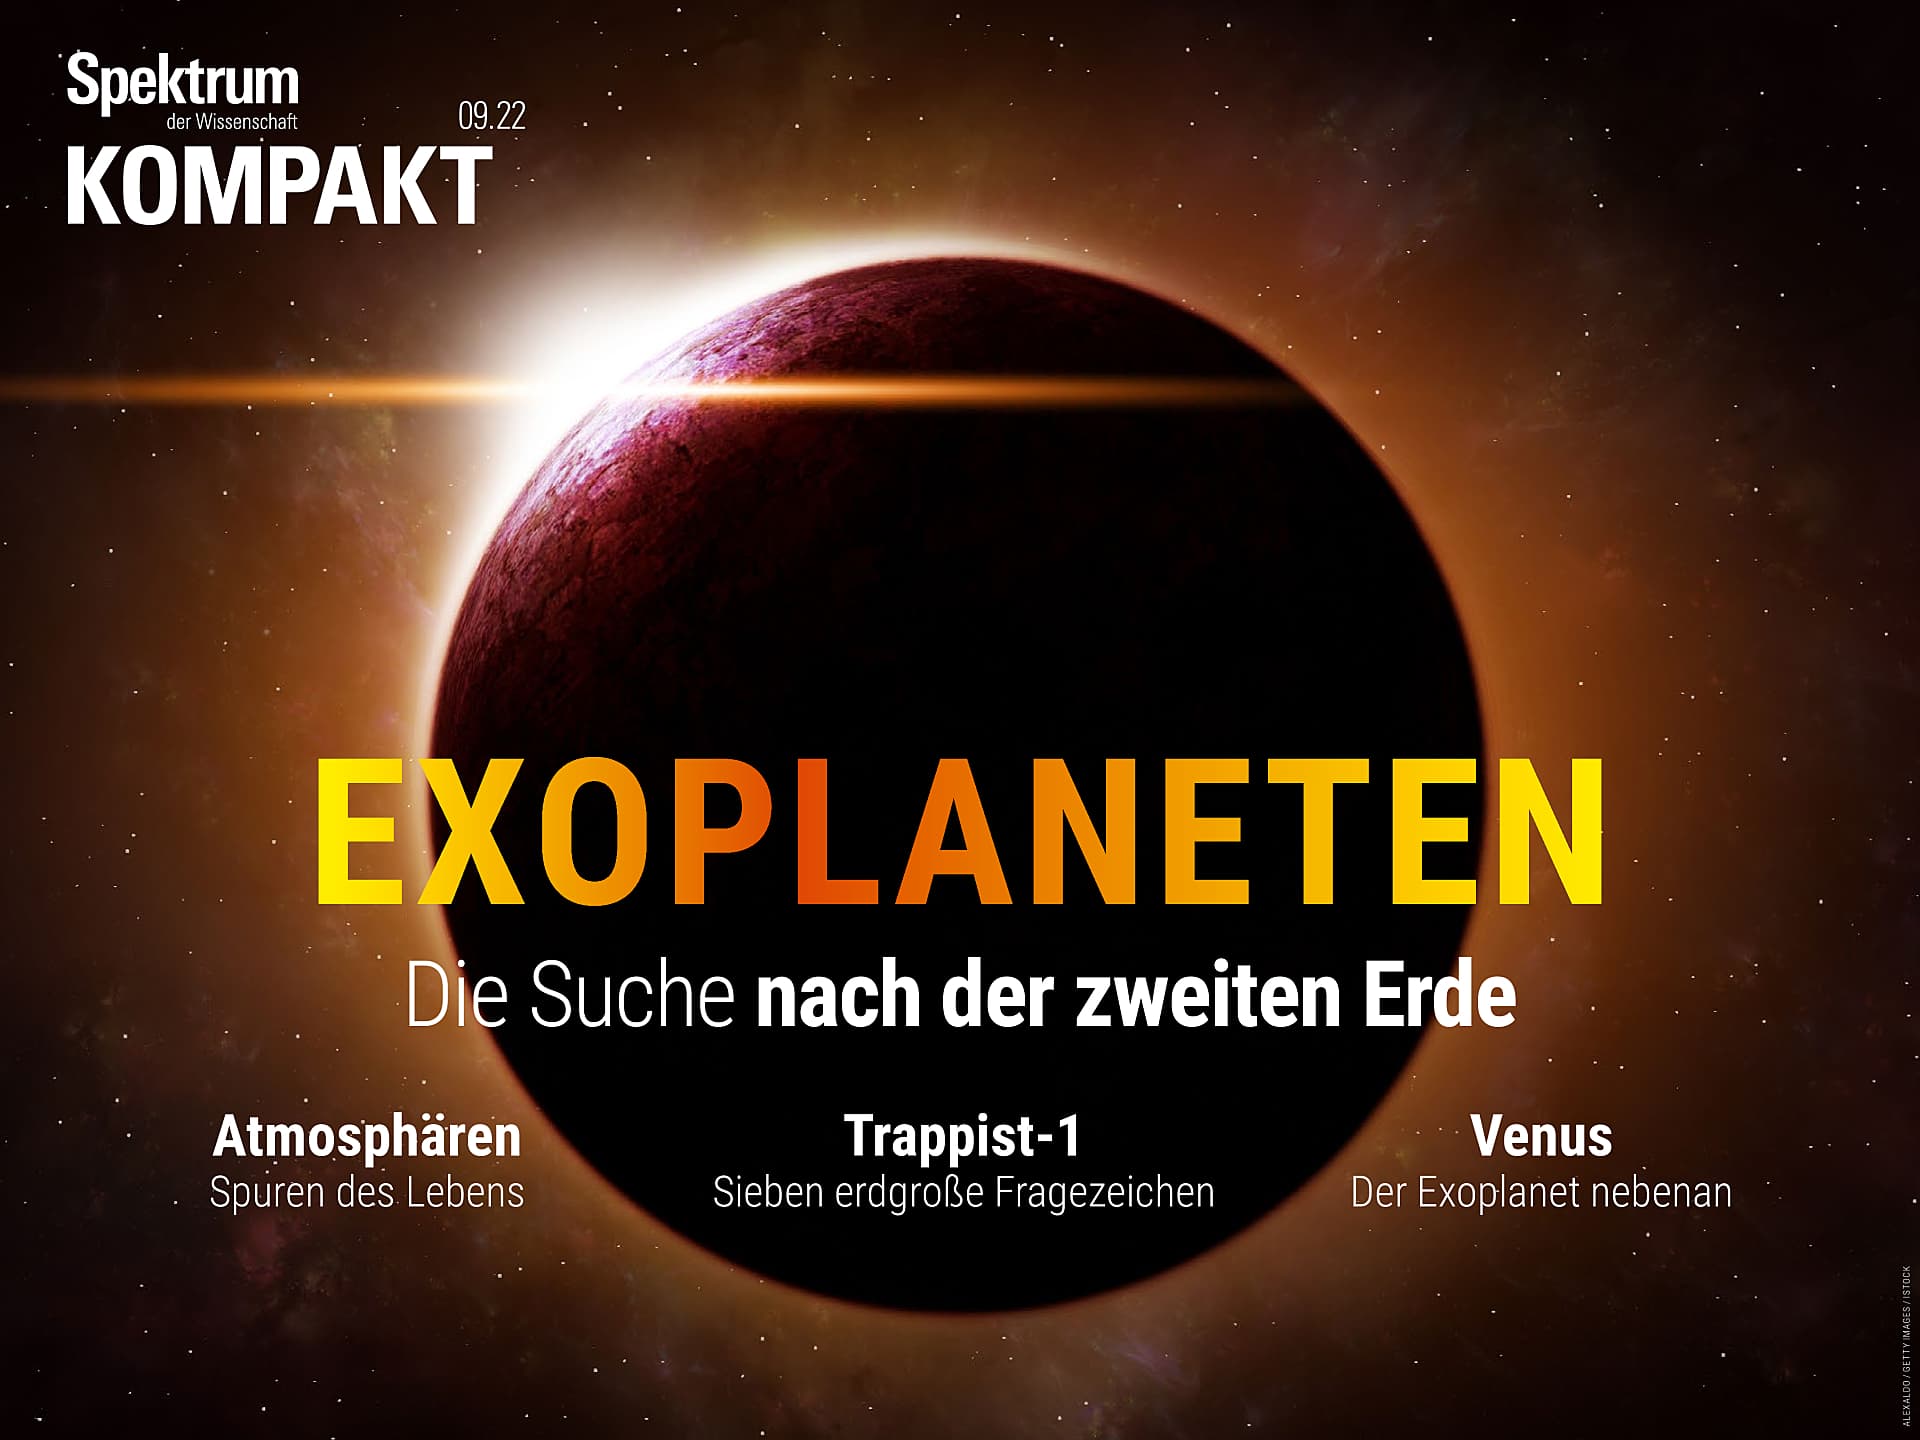 Exoplaneten - Die Suche nach der zweiten Erde